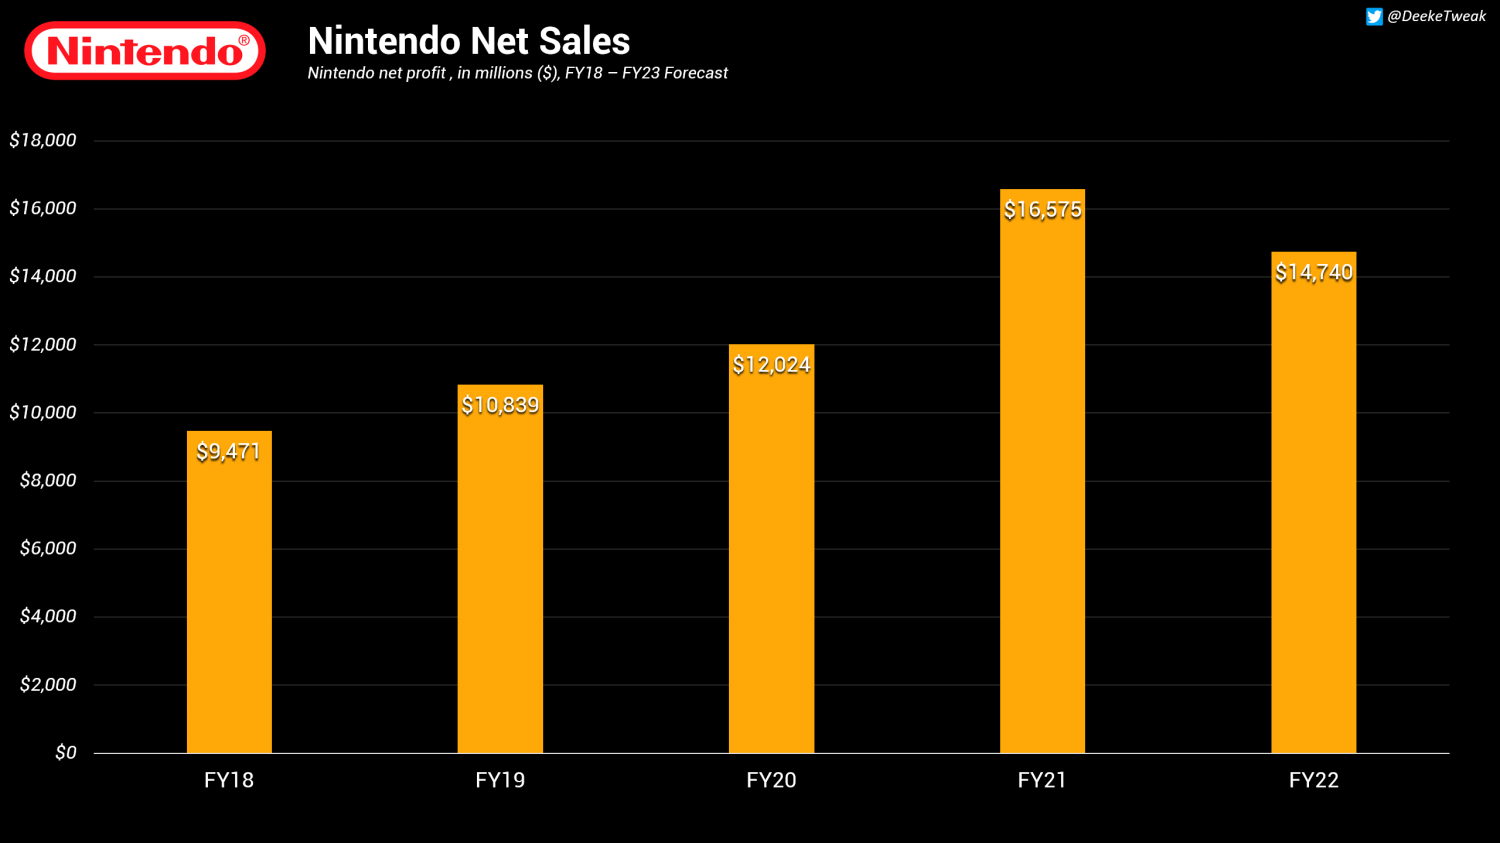 puerta Insatisfecho Cuidado Nintendo FY22 hits $14.7 billion net sales, third highest of all time